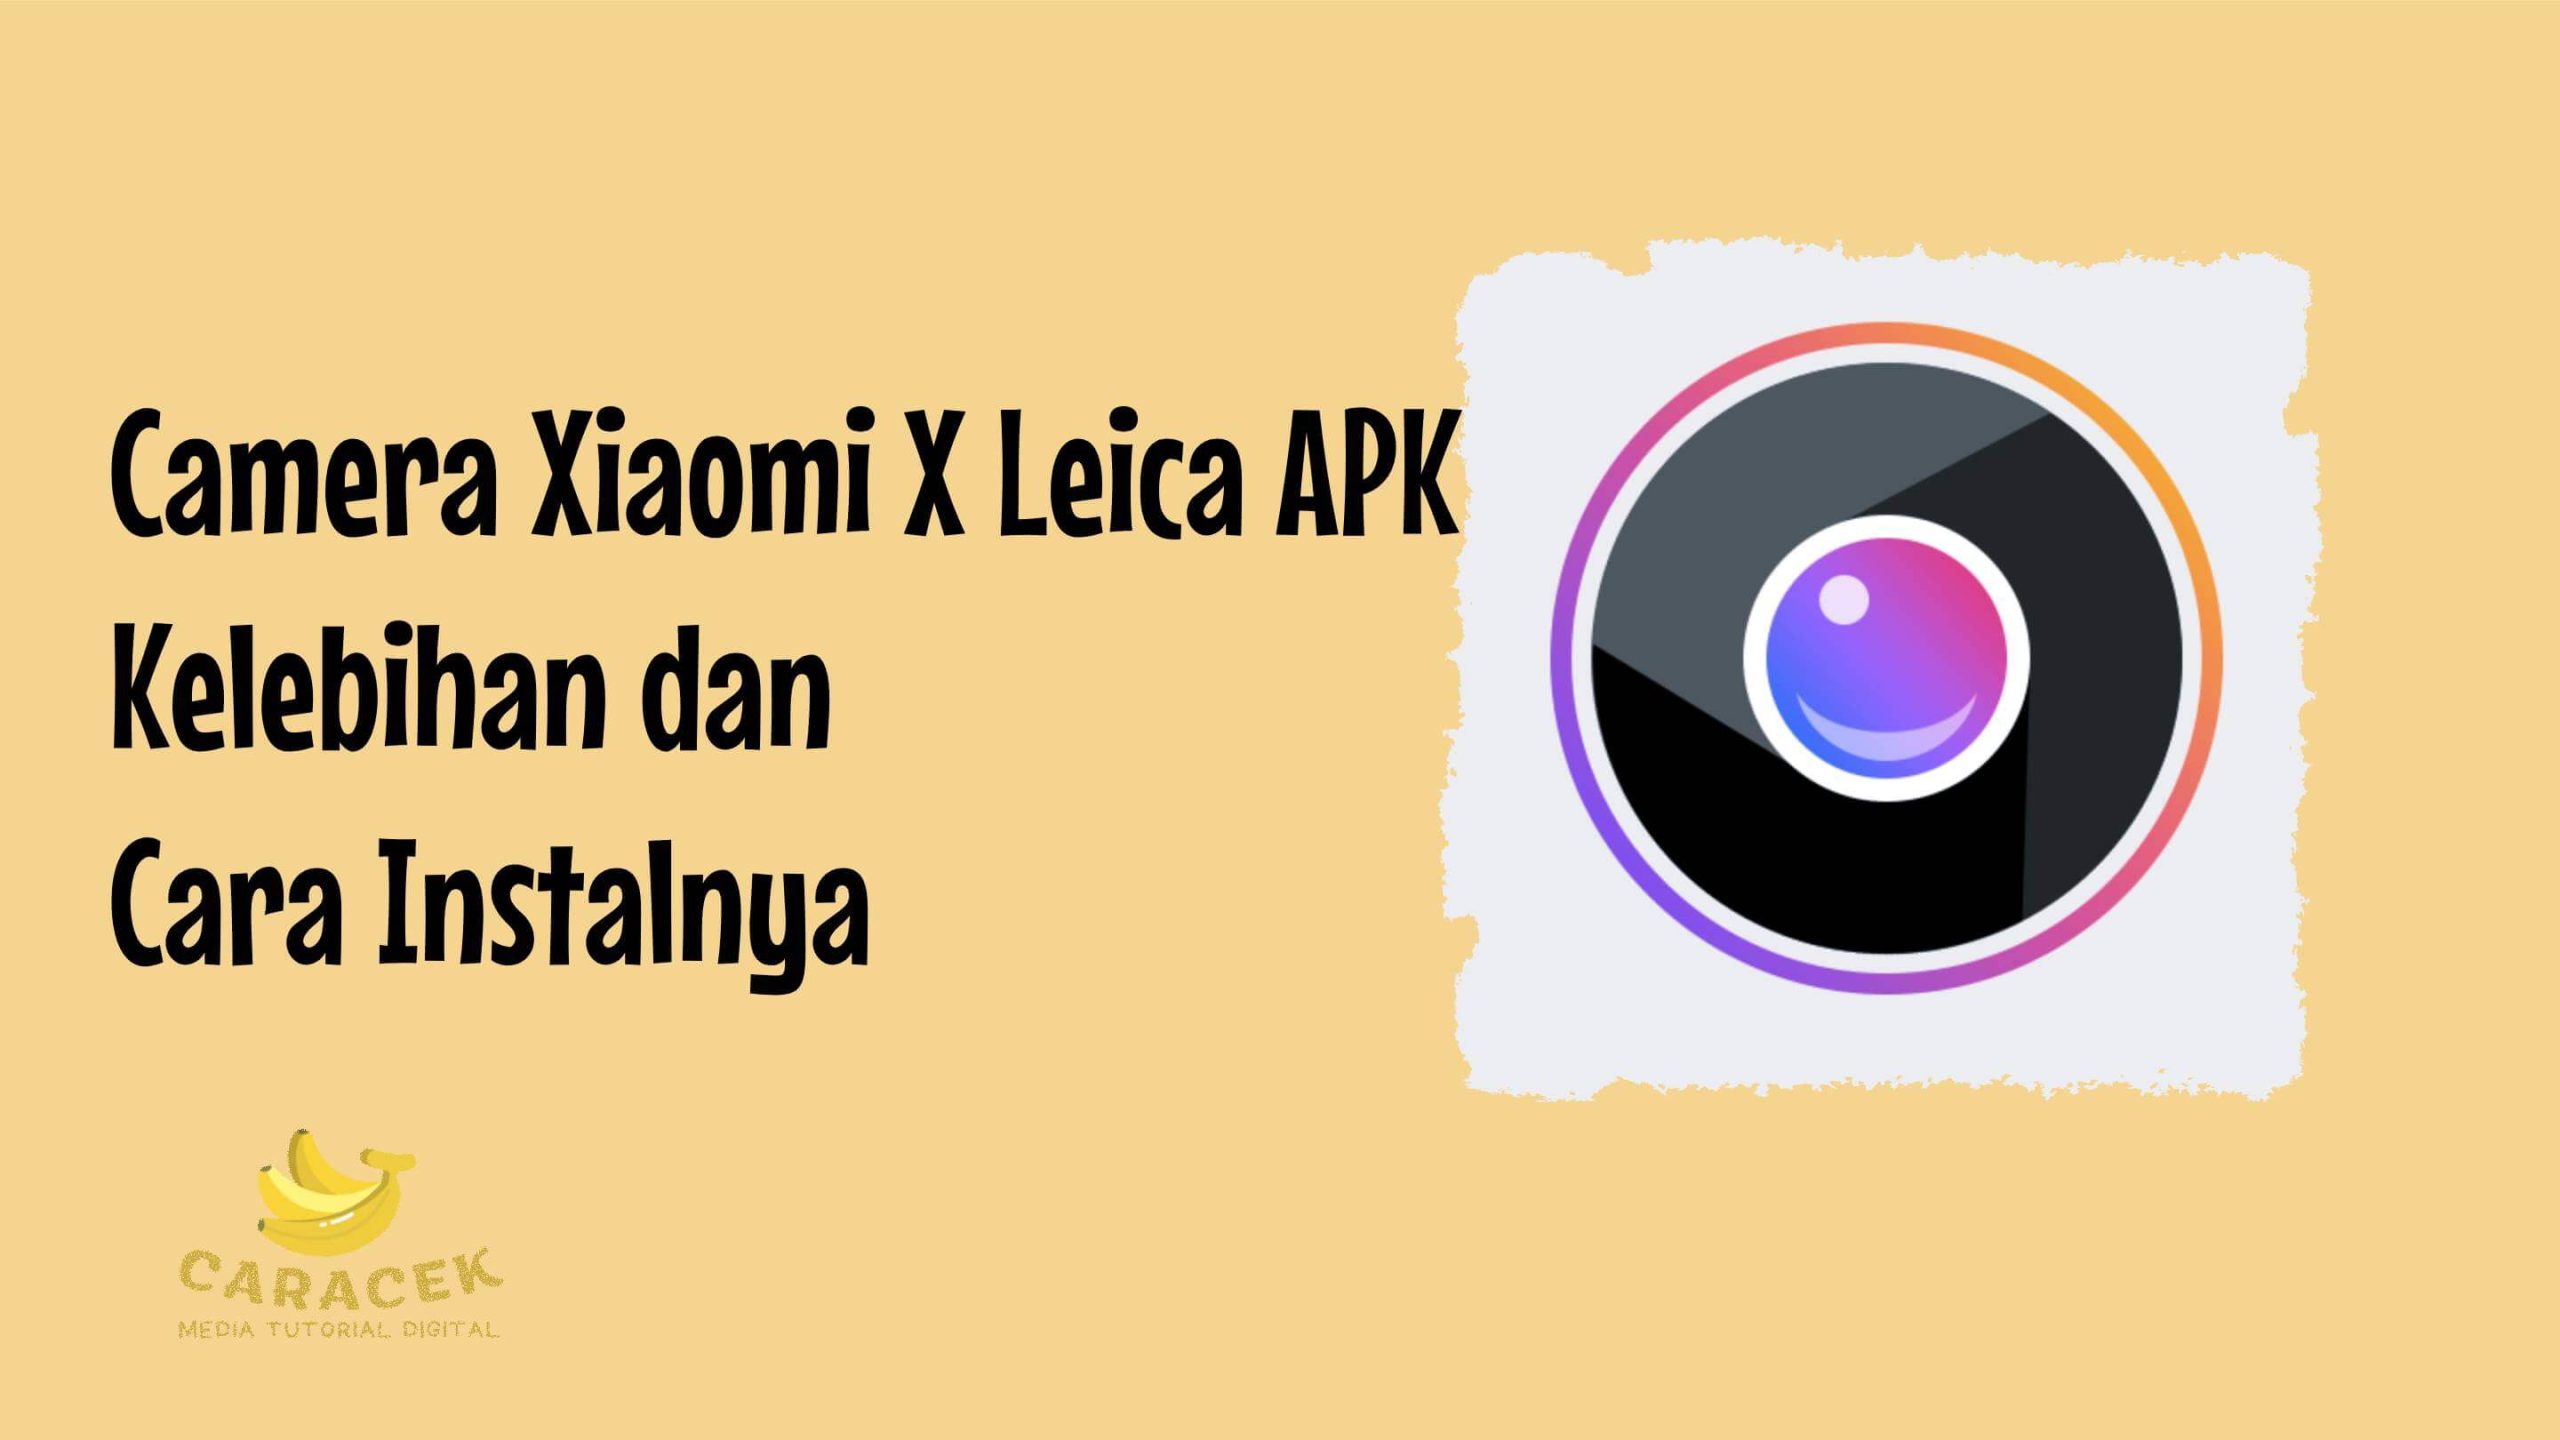 Camera Xiaomi X Leica APK